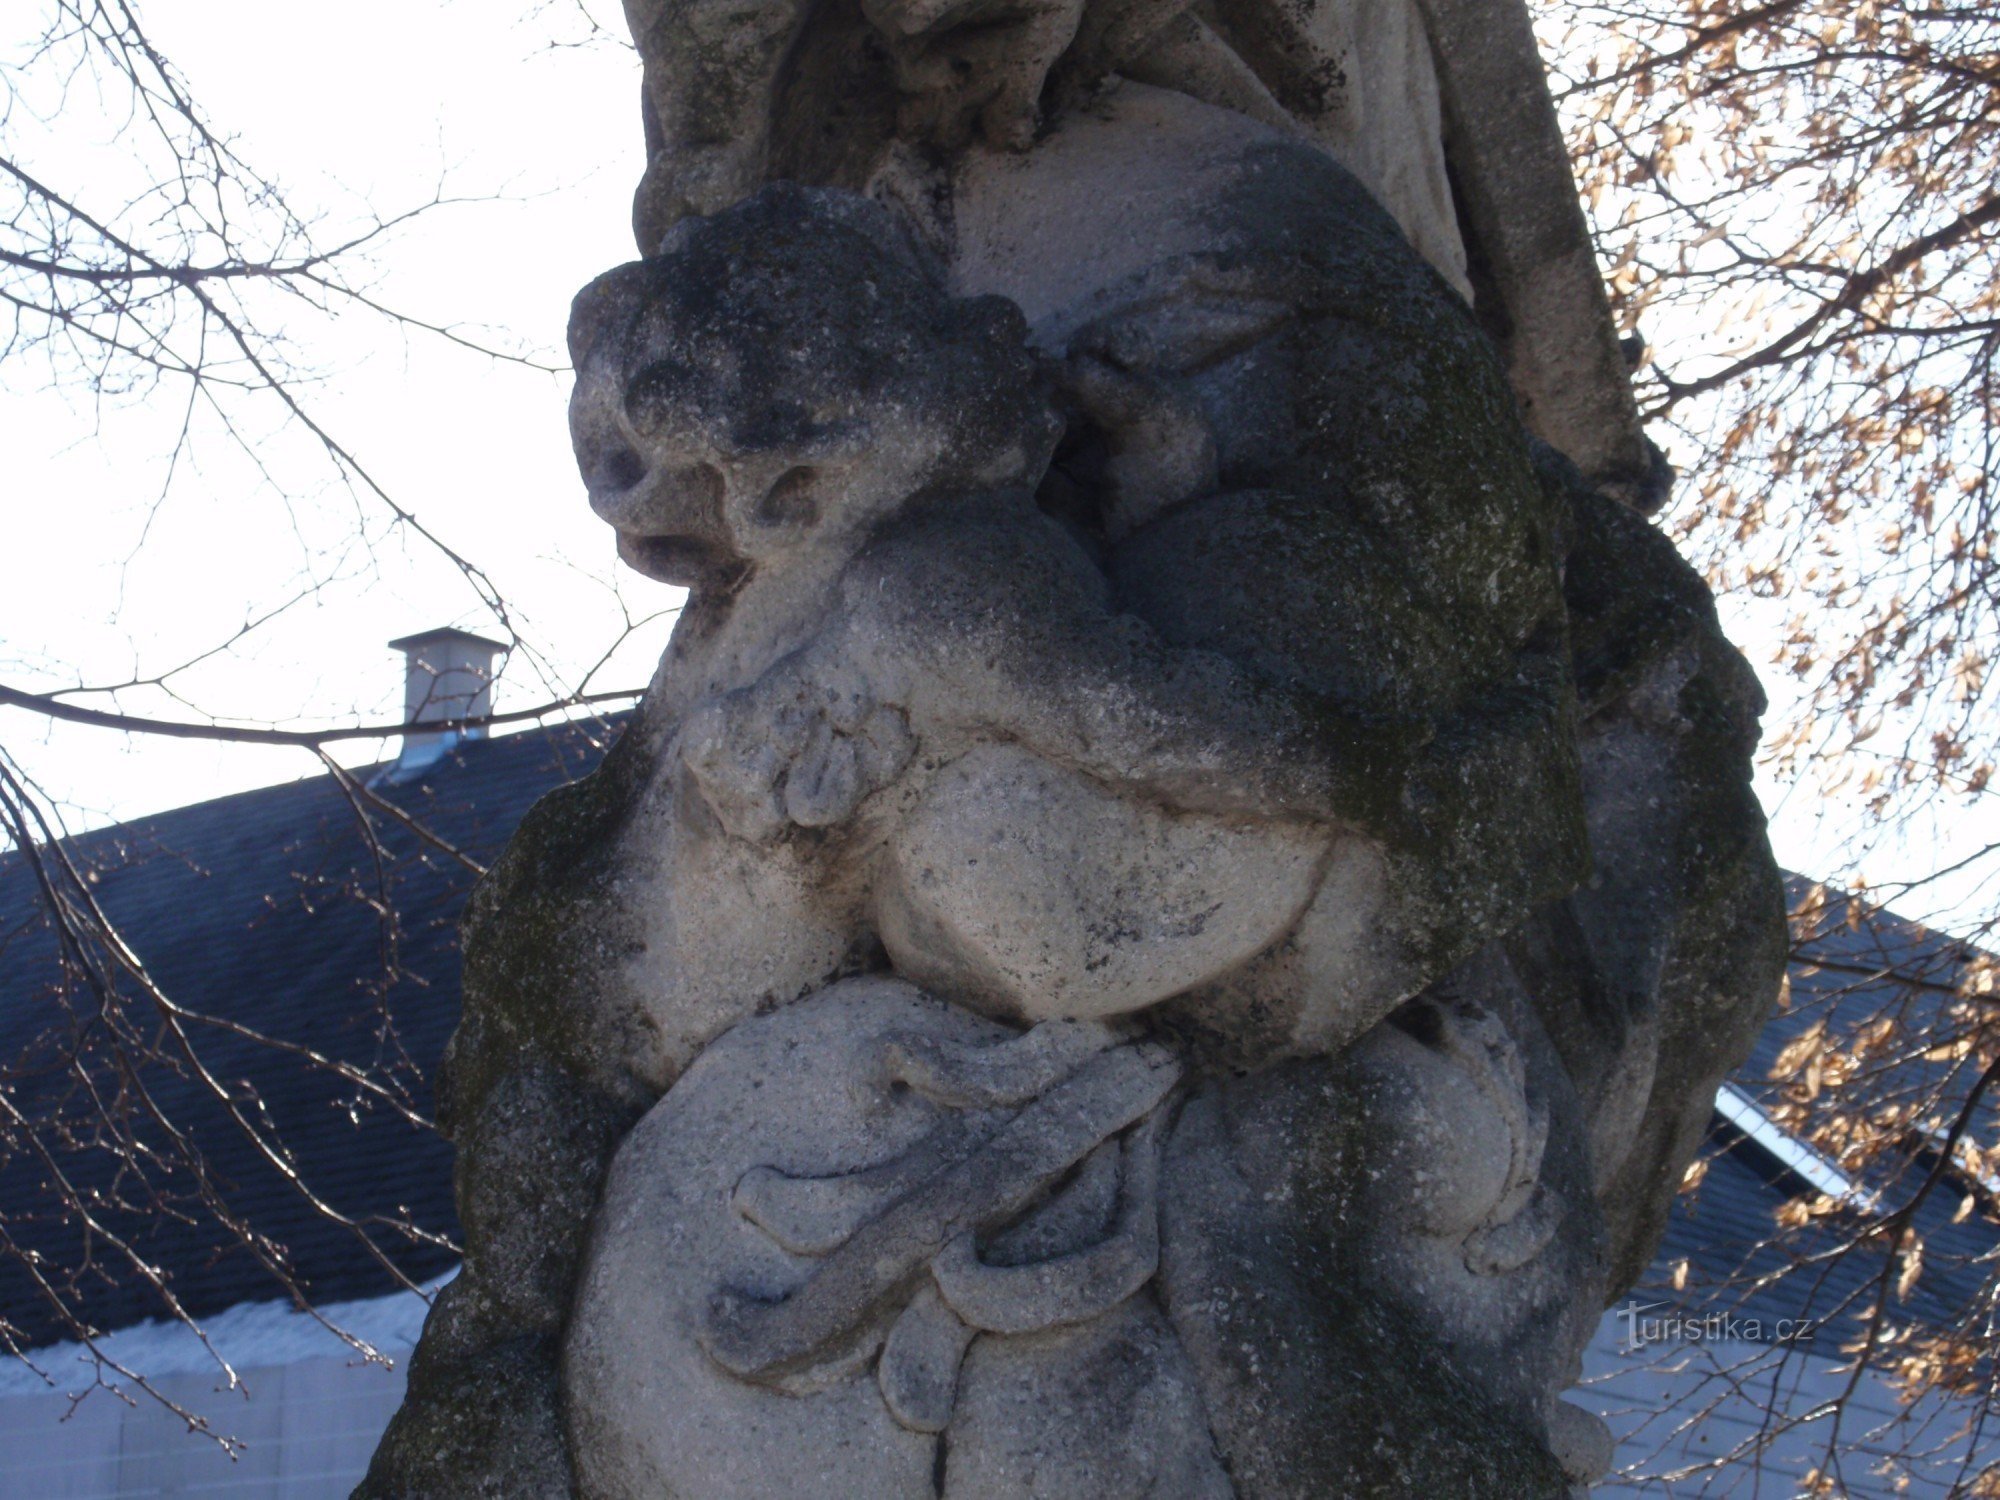 Strítež - statue of St. Jan Nepomucký